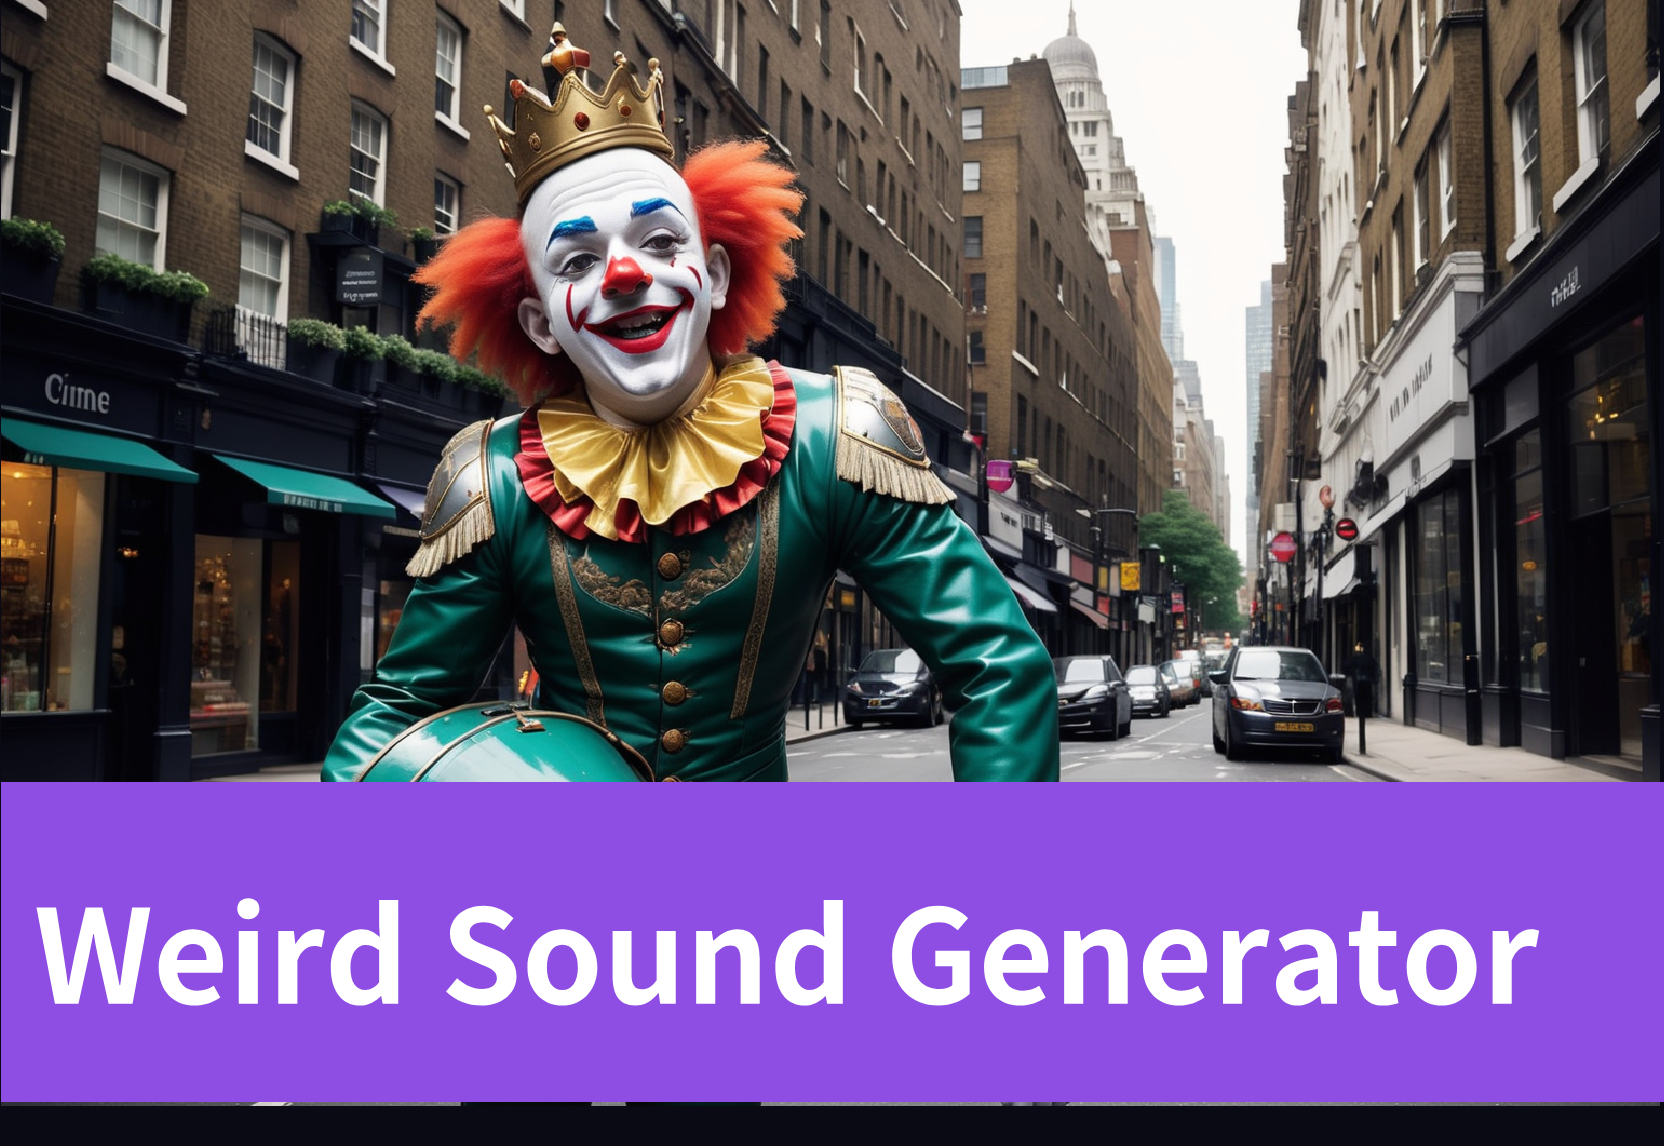 Weird Sound Generator: Discover Strange and Unique Sounds